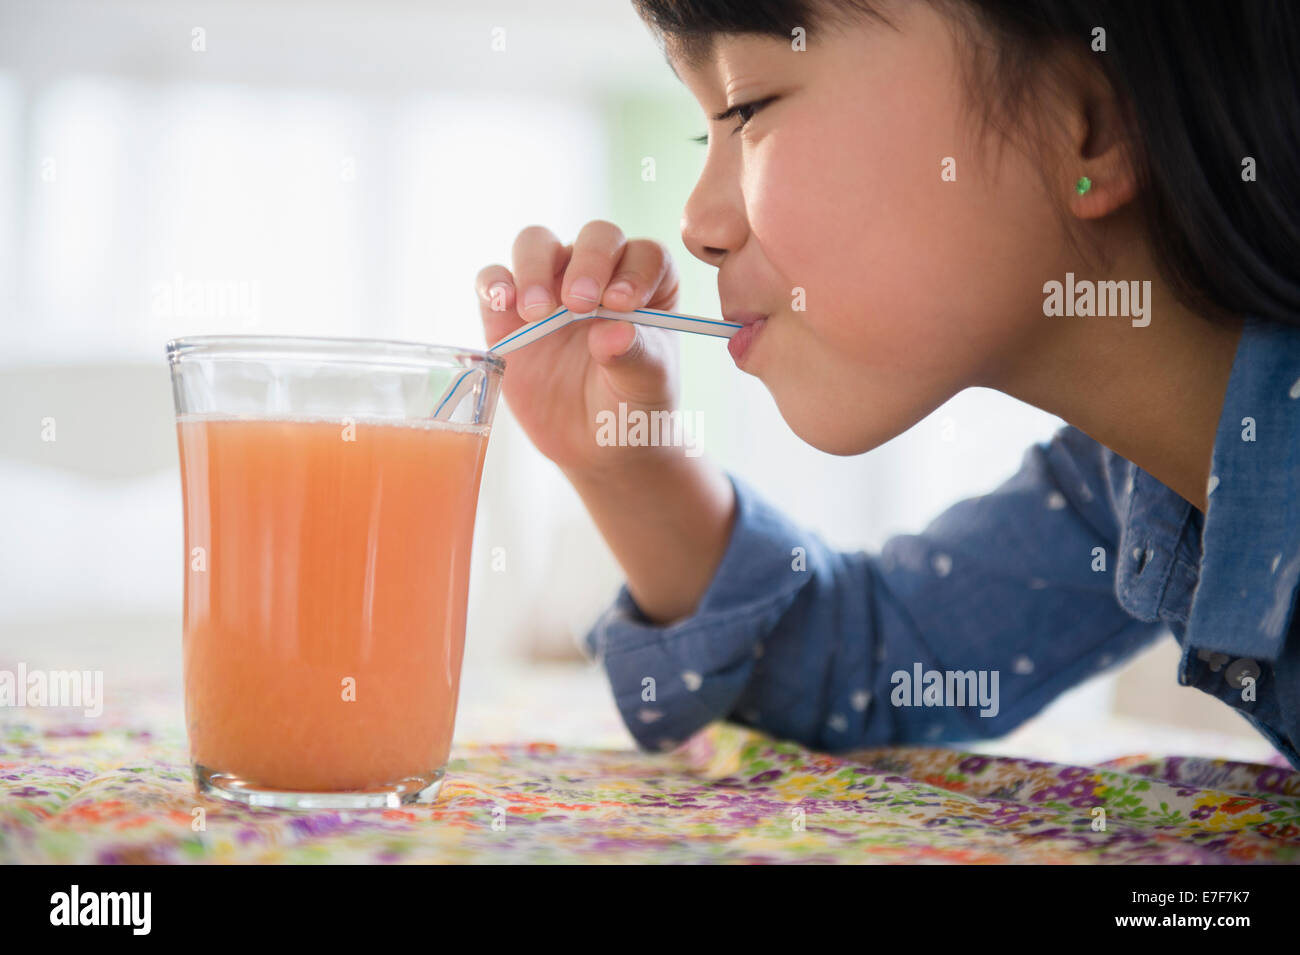 Filipino girl drinking juice on table Stock Photo